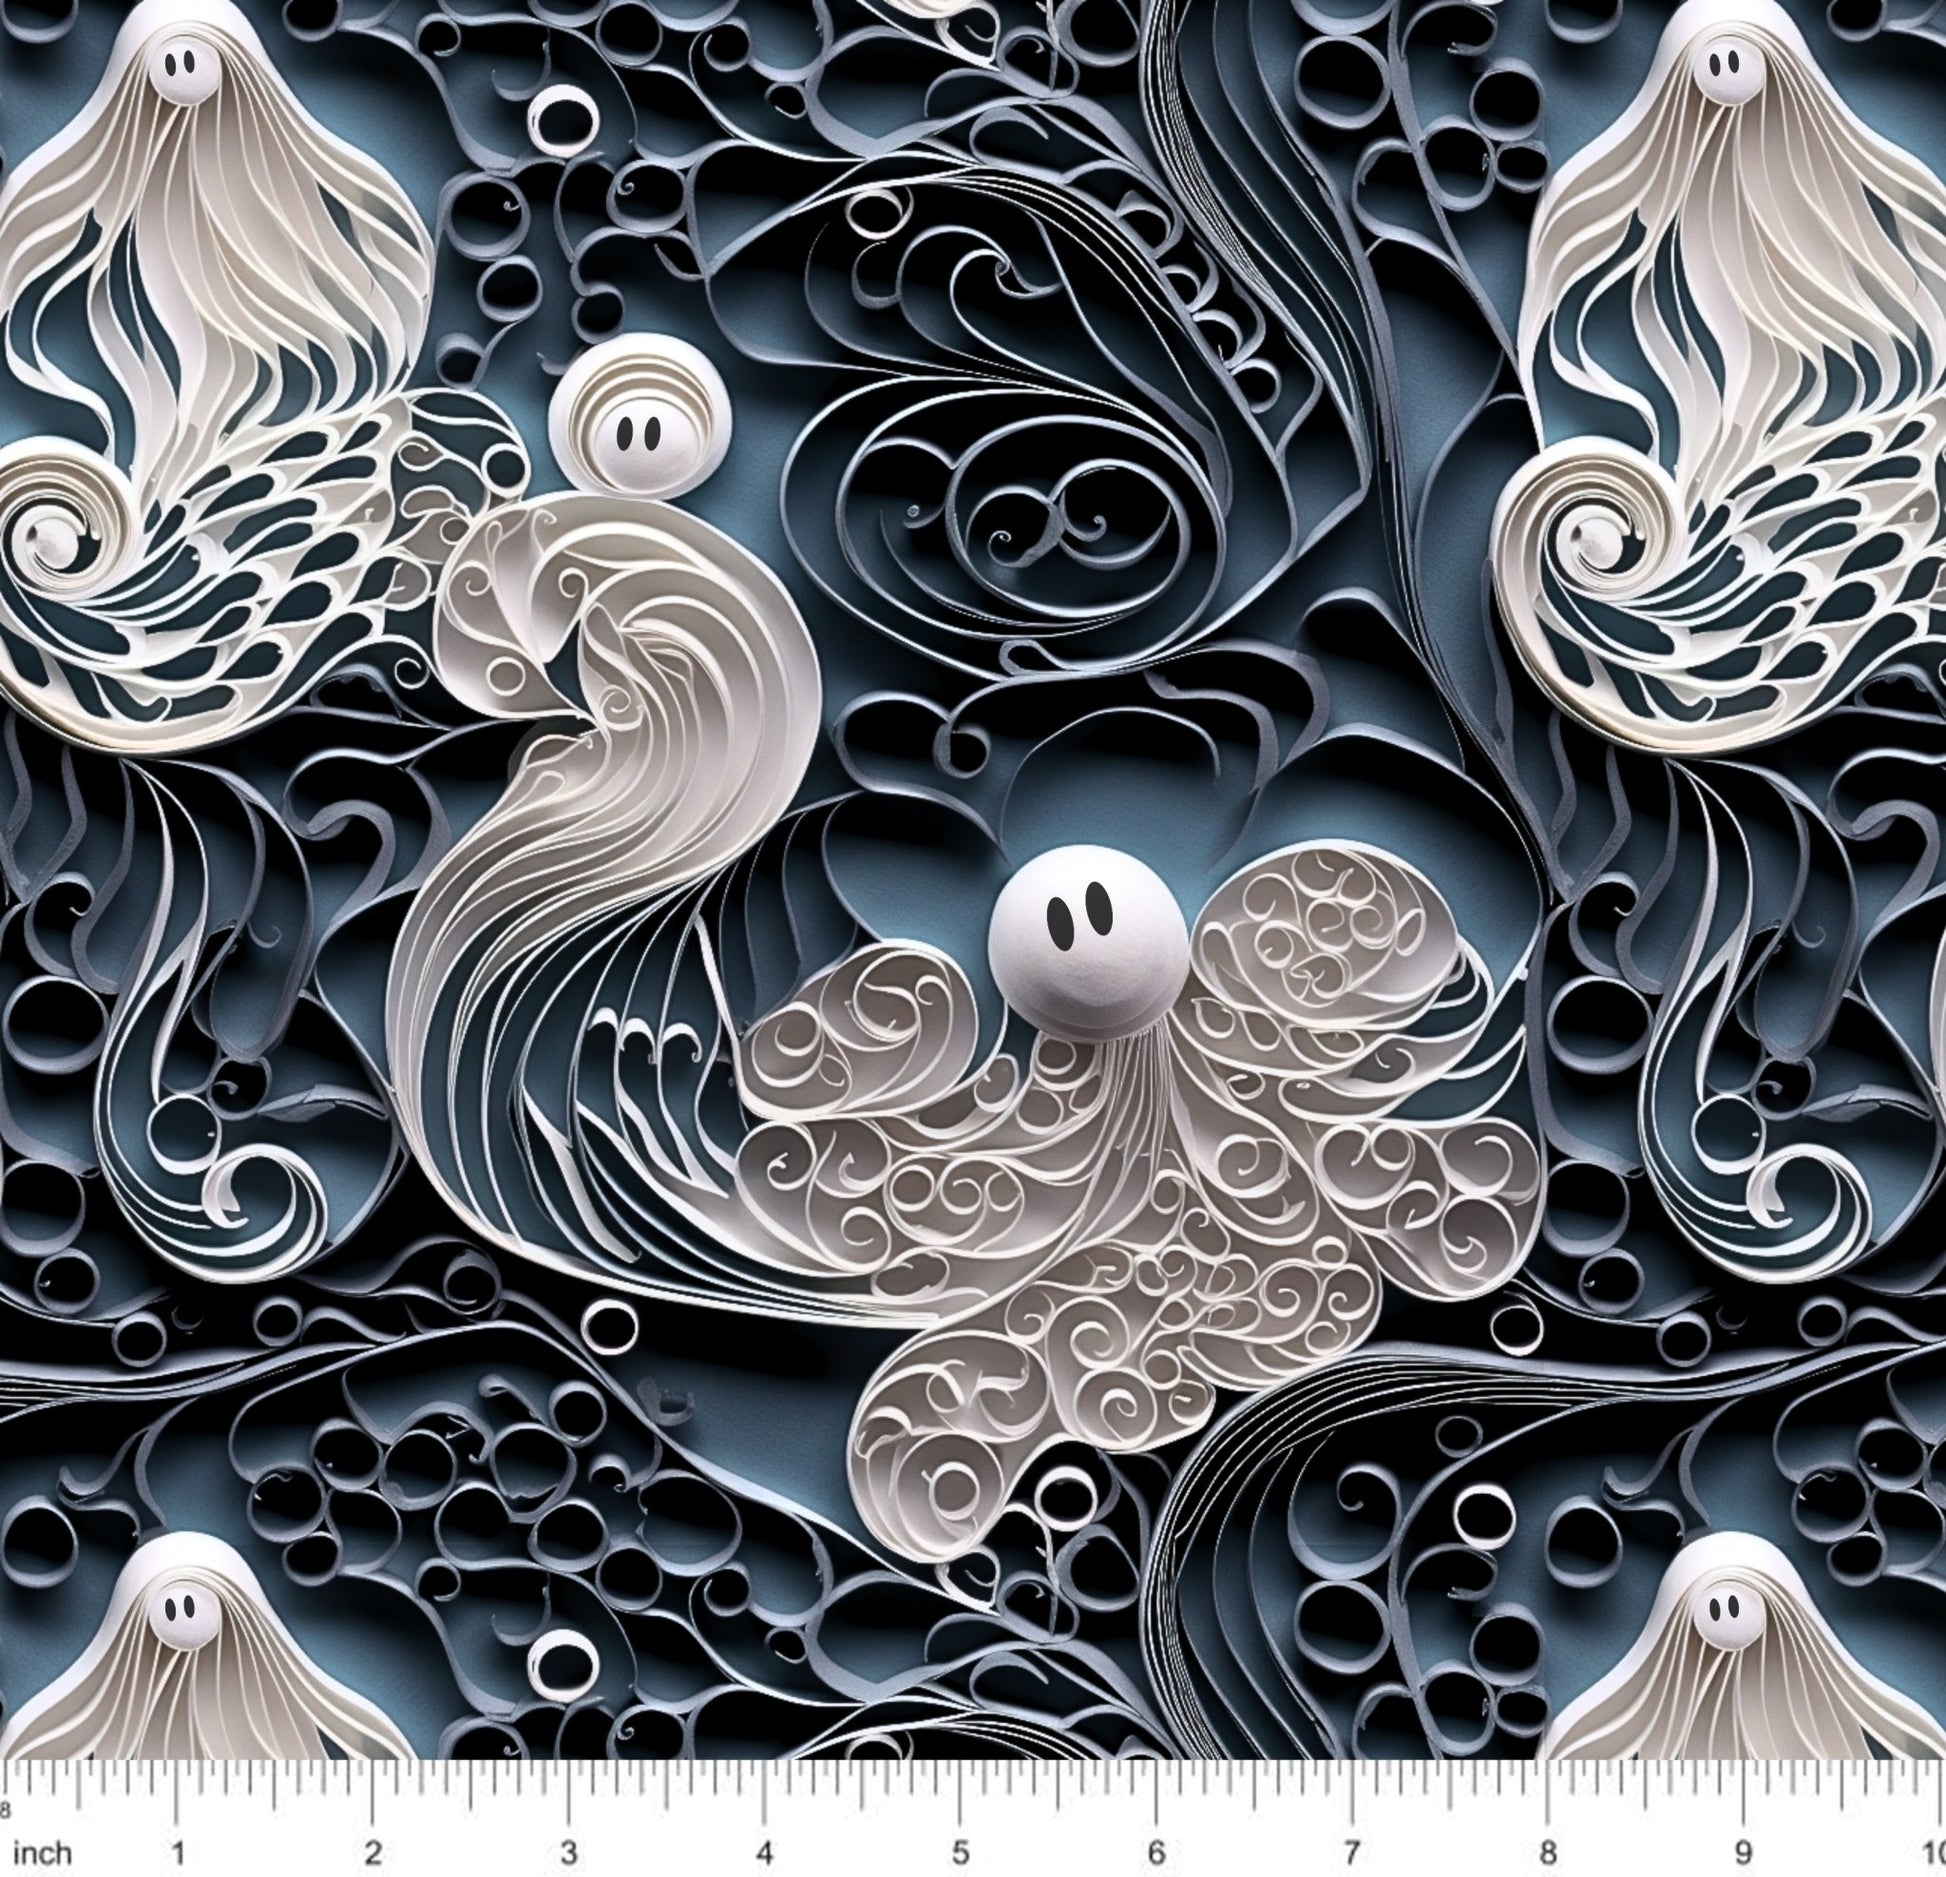 Bonnie's Boujee Designs - Swirly Wispy Ghosts - 3D Look - Little Rhody Sewing Co.